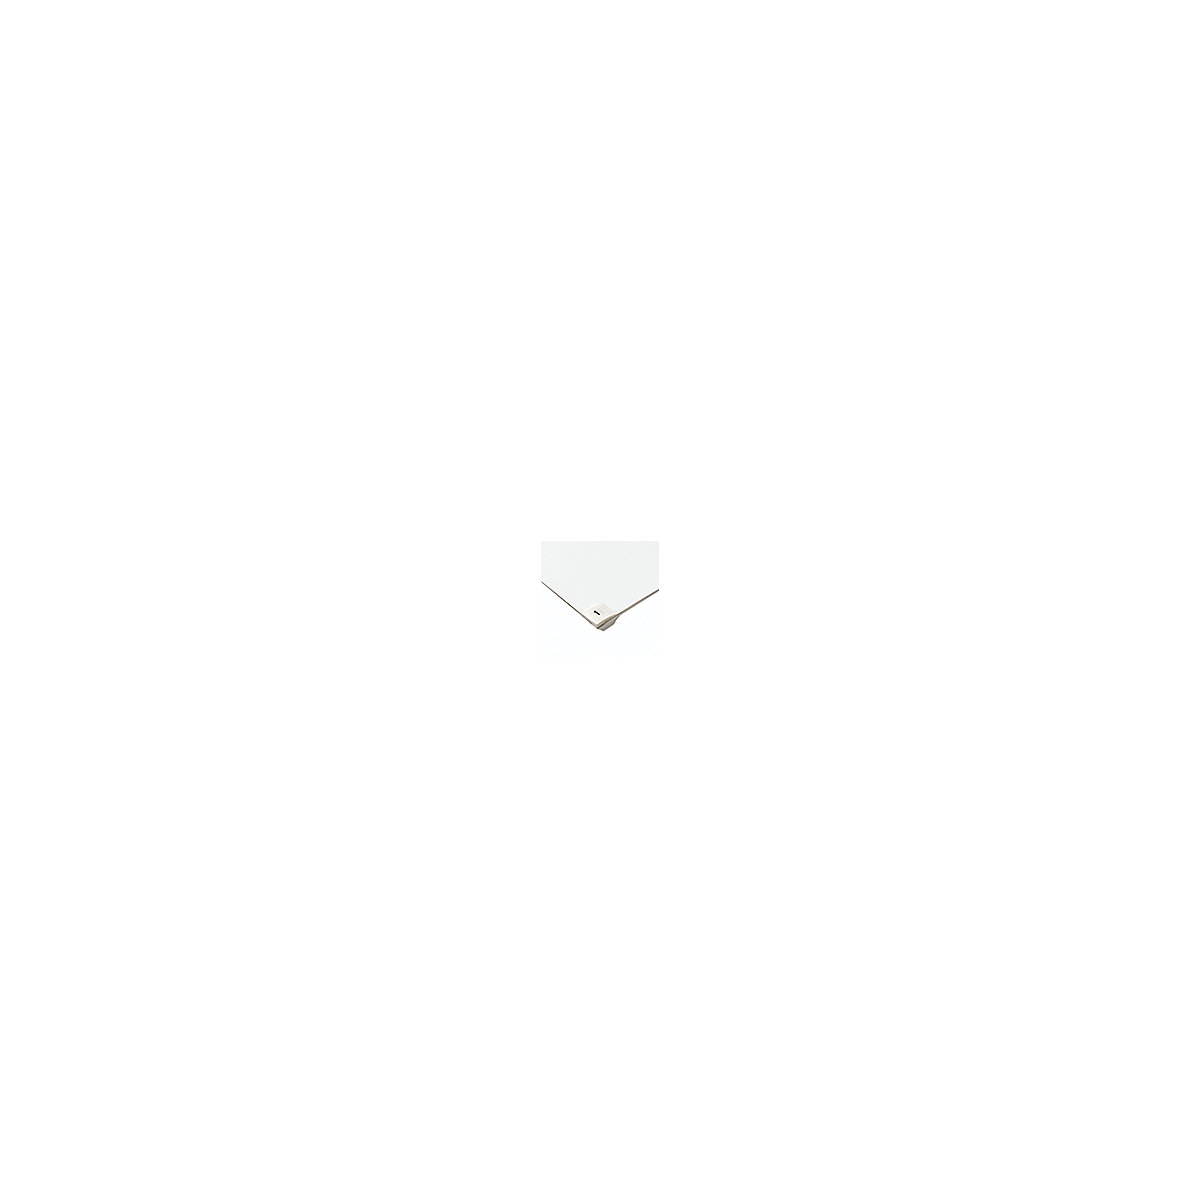 Stuoie adesive monouso per camere bianche – COBA